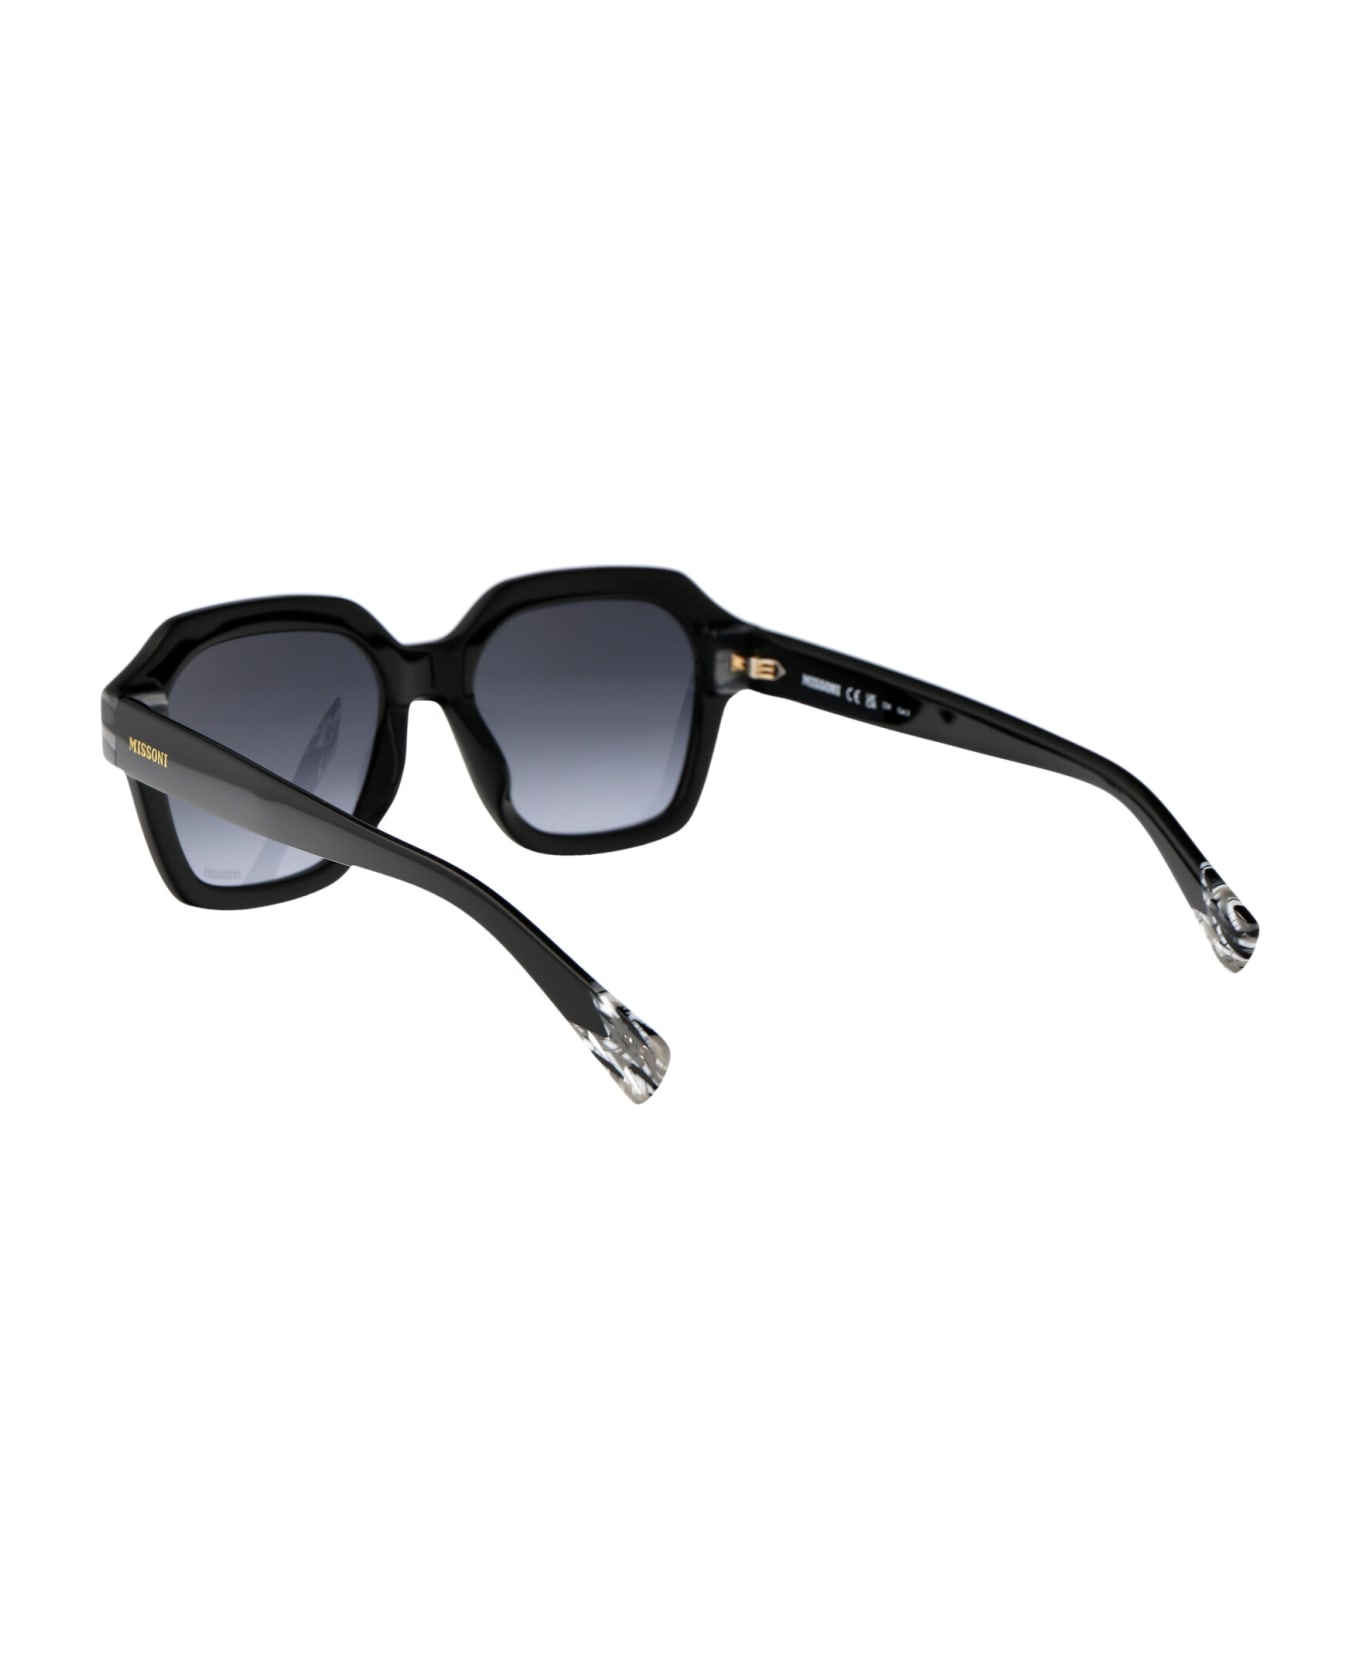 Missoni Mis 0130/g/s Sunglasses - 8079O BLACK サングラス